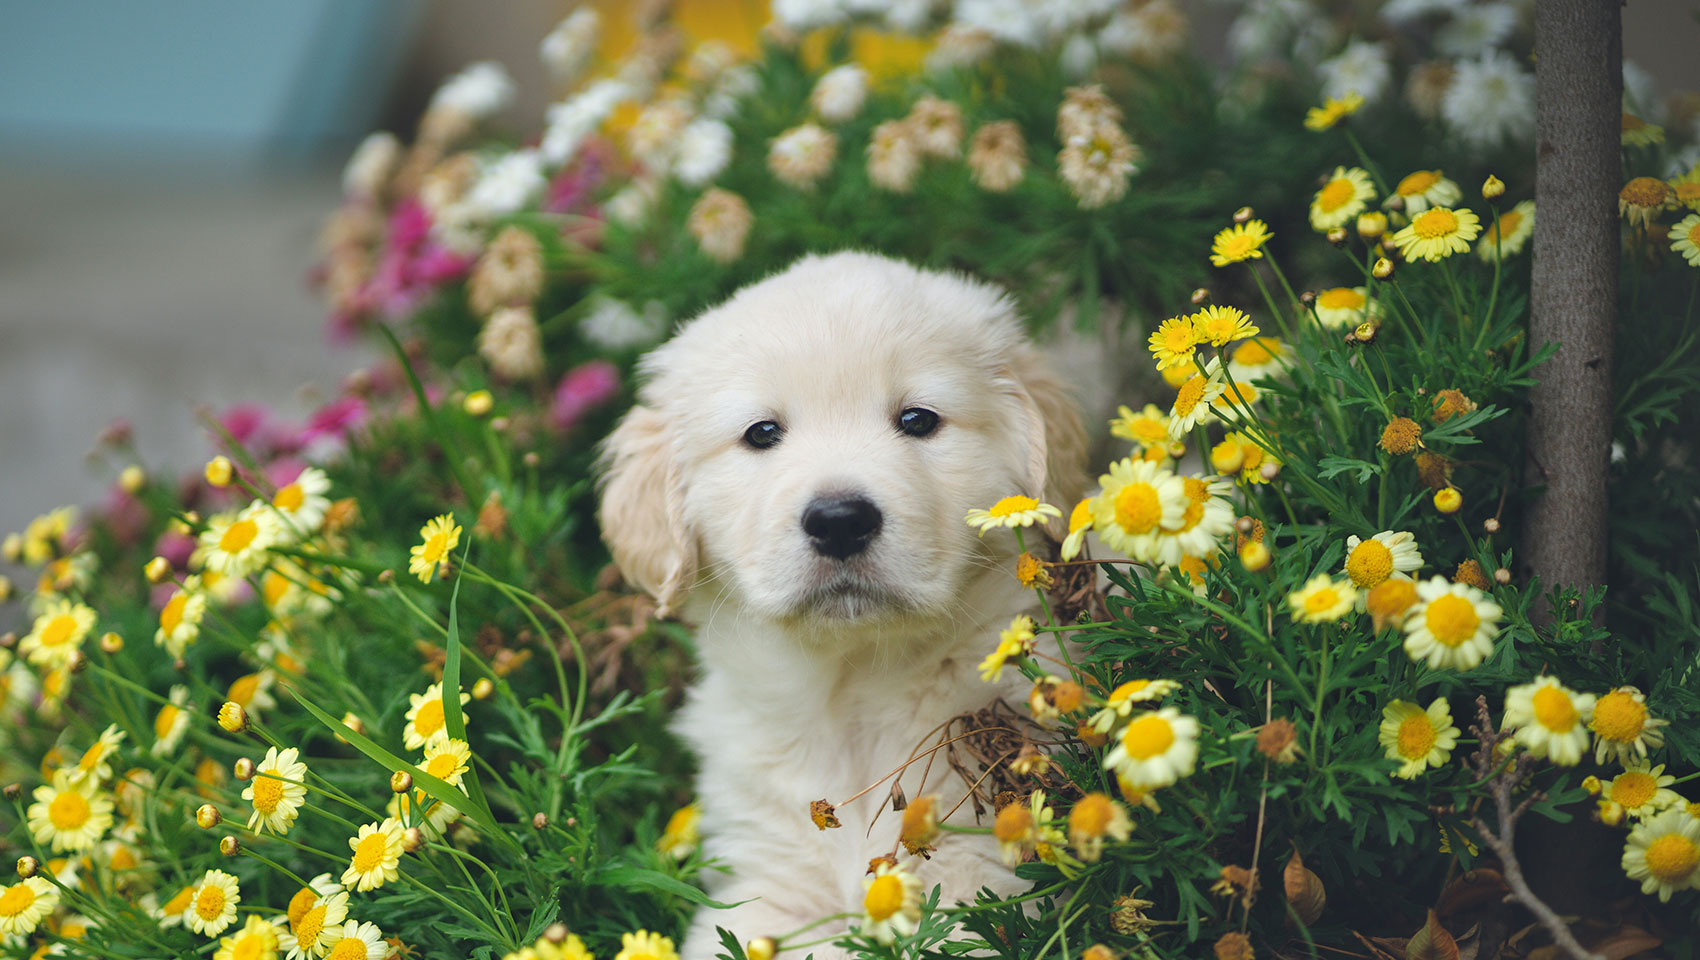 golden retriver puppy standing in flowers